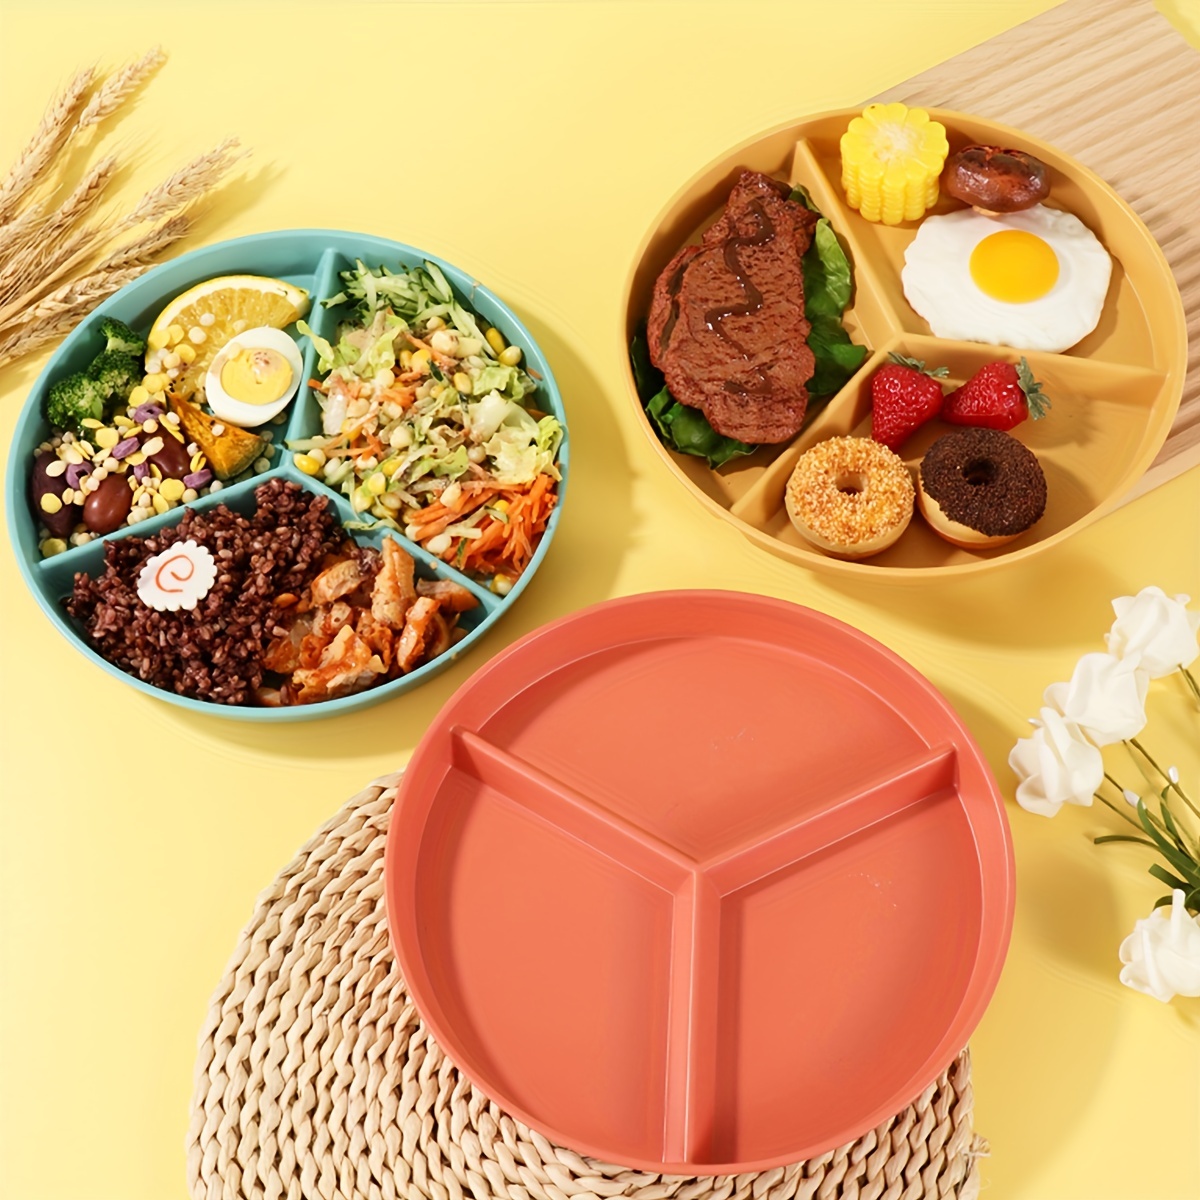  Bandeja para servir alimentos con compartimento de acero  inoxidable - Plato de comida para una dieta saludable : Hogar y Cocina